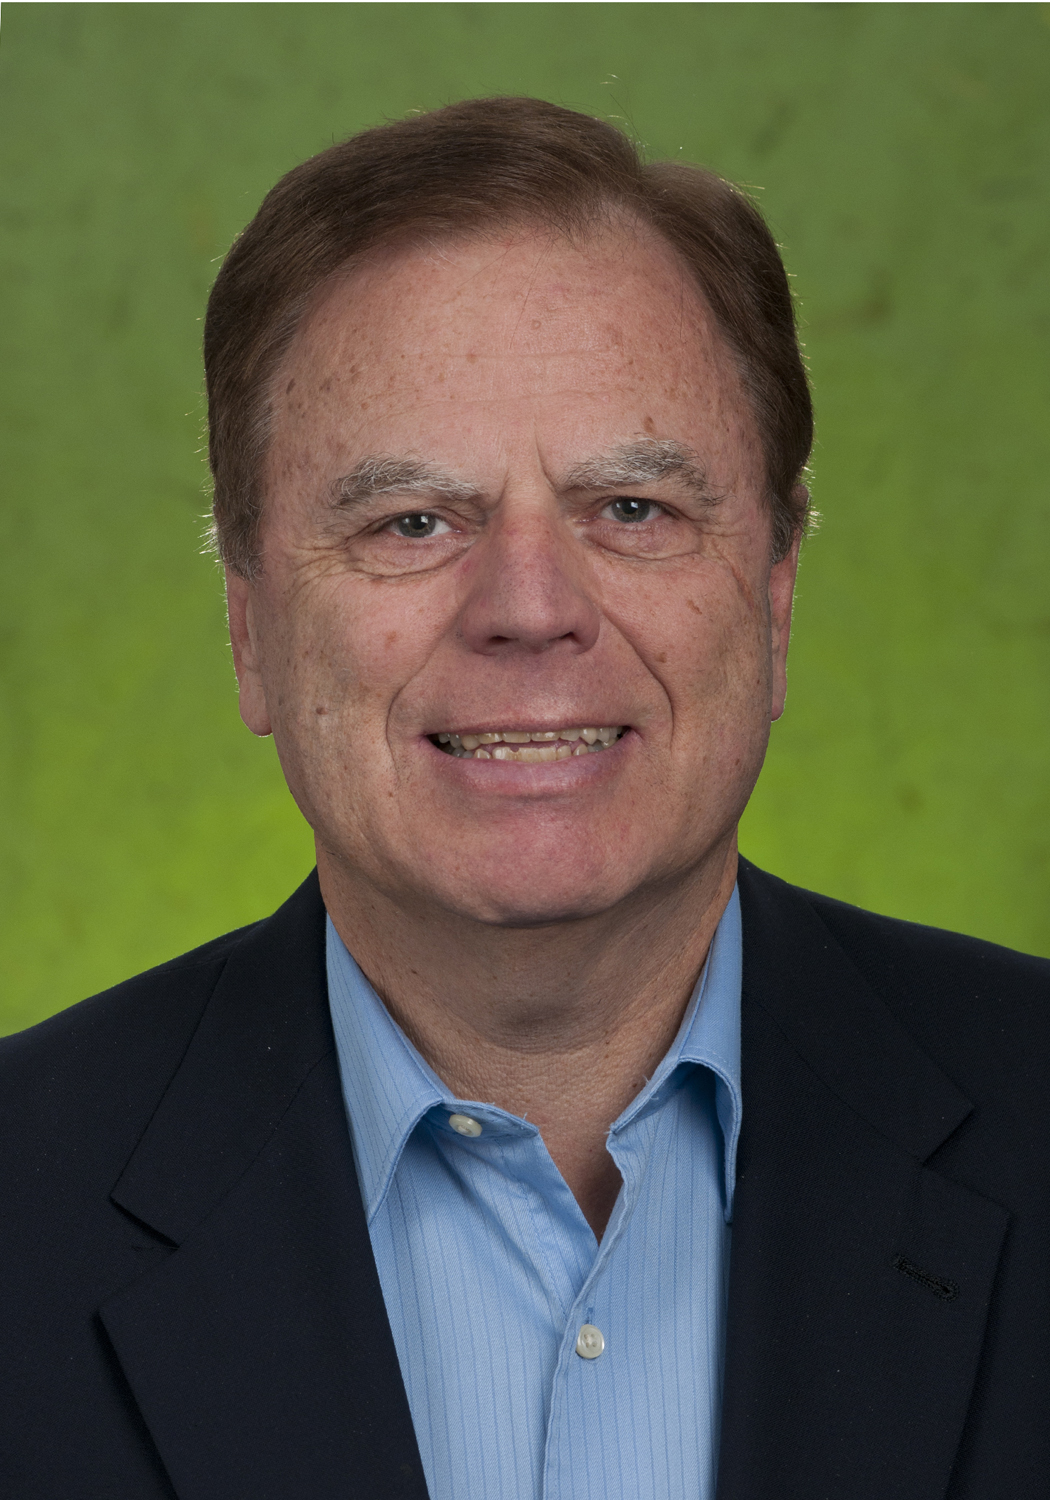 Dr. Thomas C. Kinnear, 2016 William L. Wilkie Award Winner